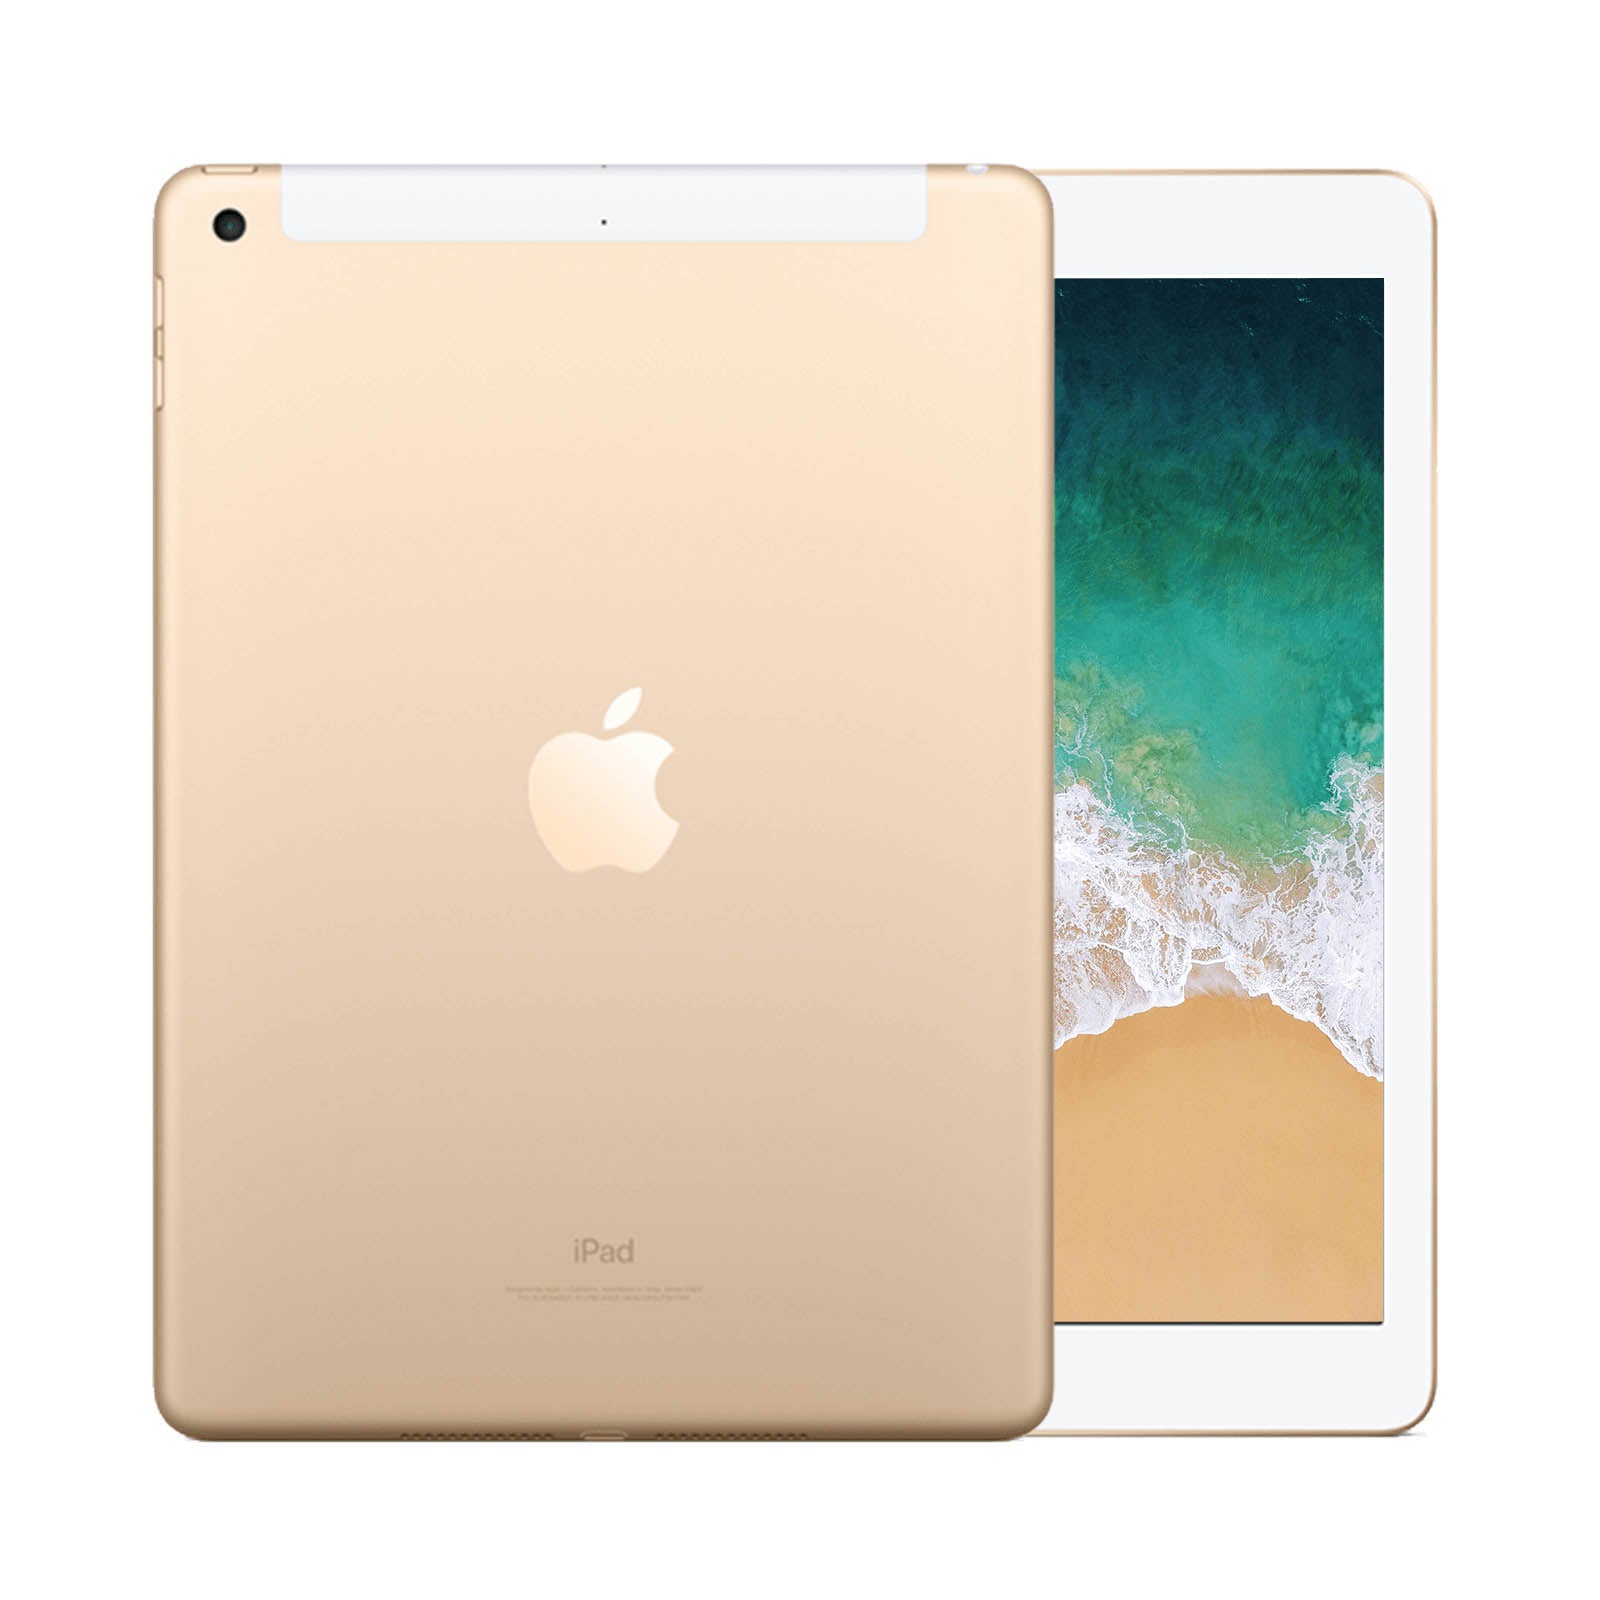 Ristrutturatoished Apple iPad Air 2 128GB WiFi & Cellulare Oro Come Nuovo